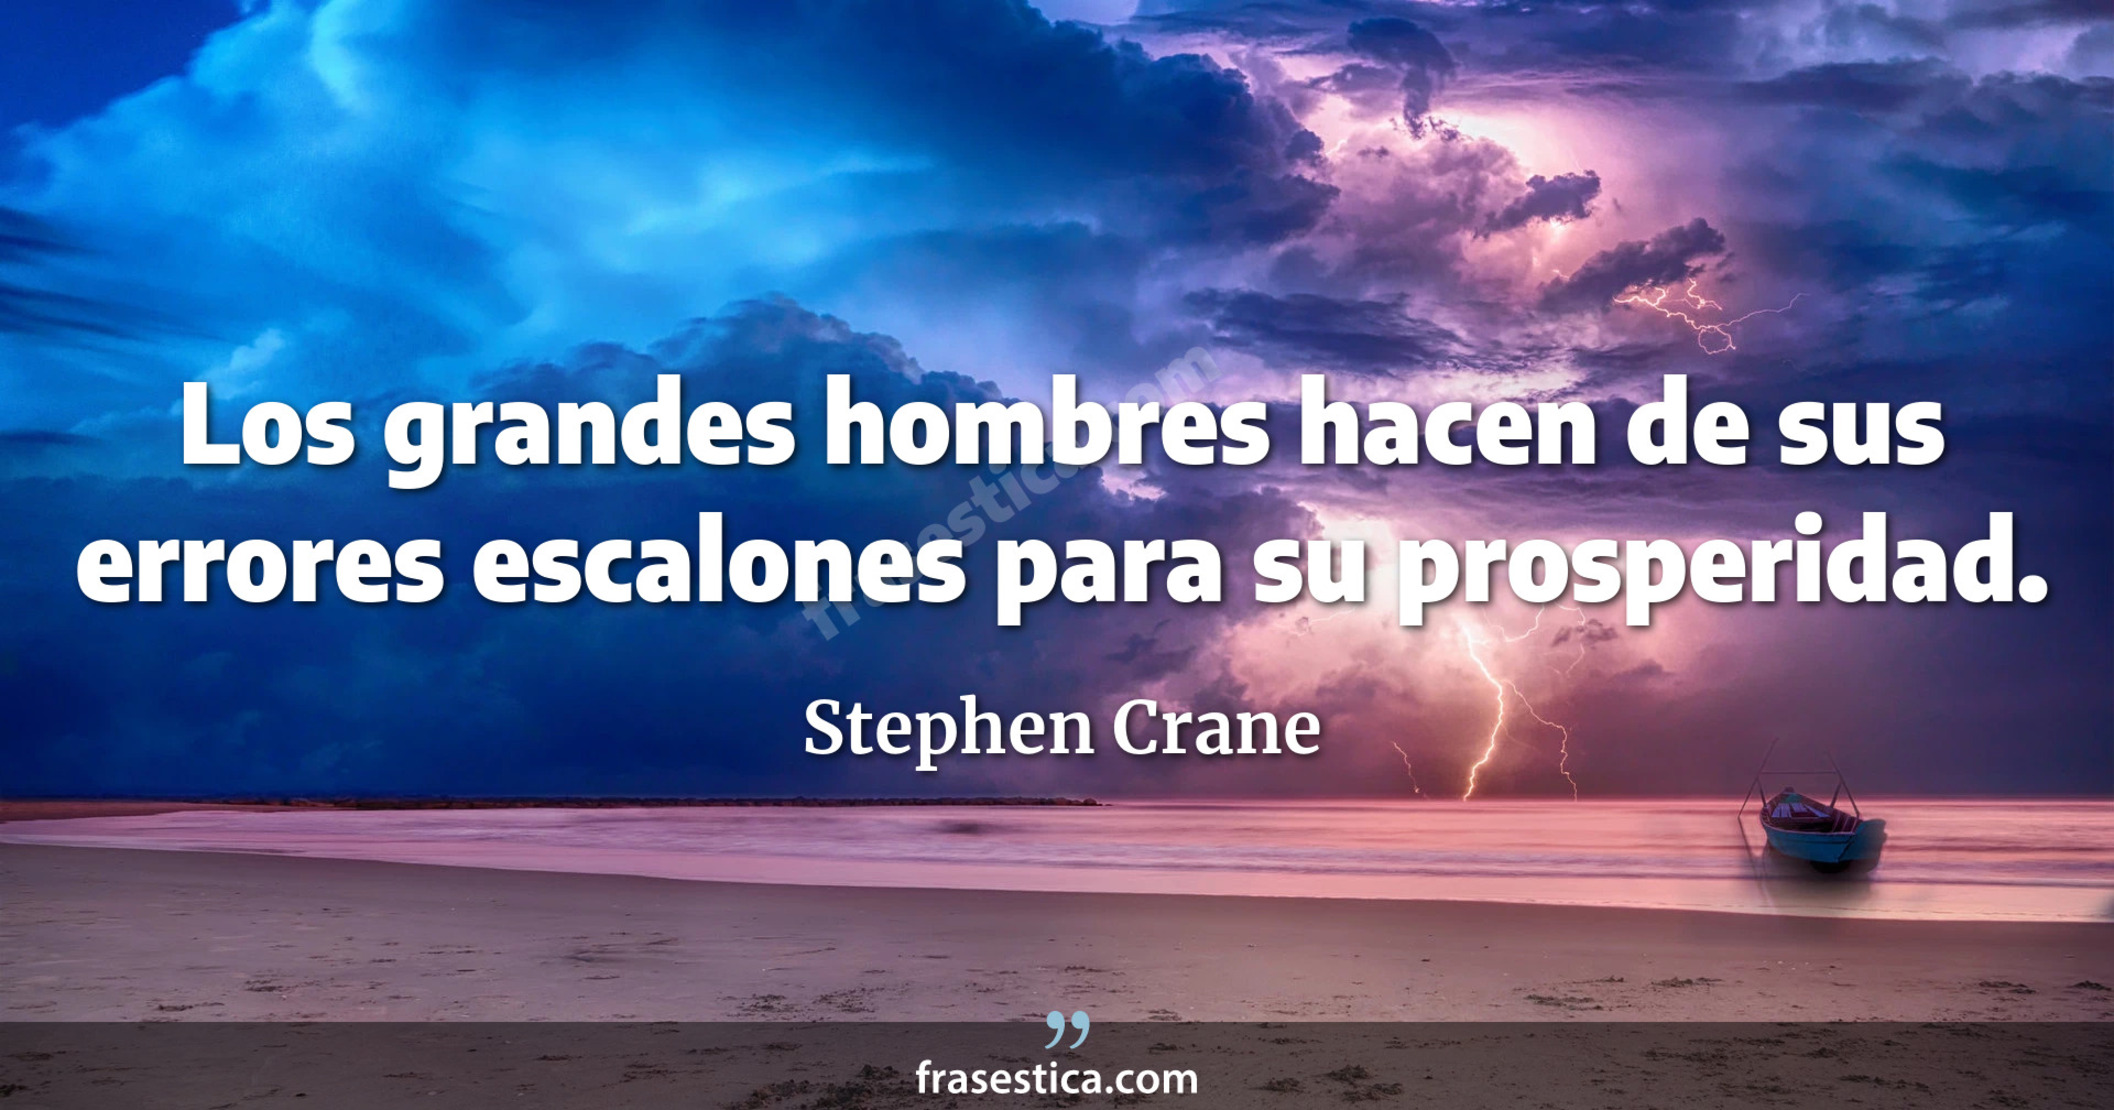 Los grandes hombres hacen de sus errores escalones para su prosperidad. - Stephen Crane